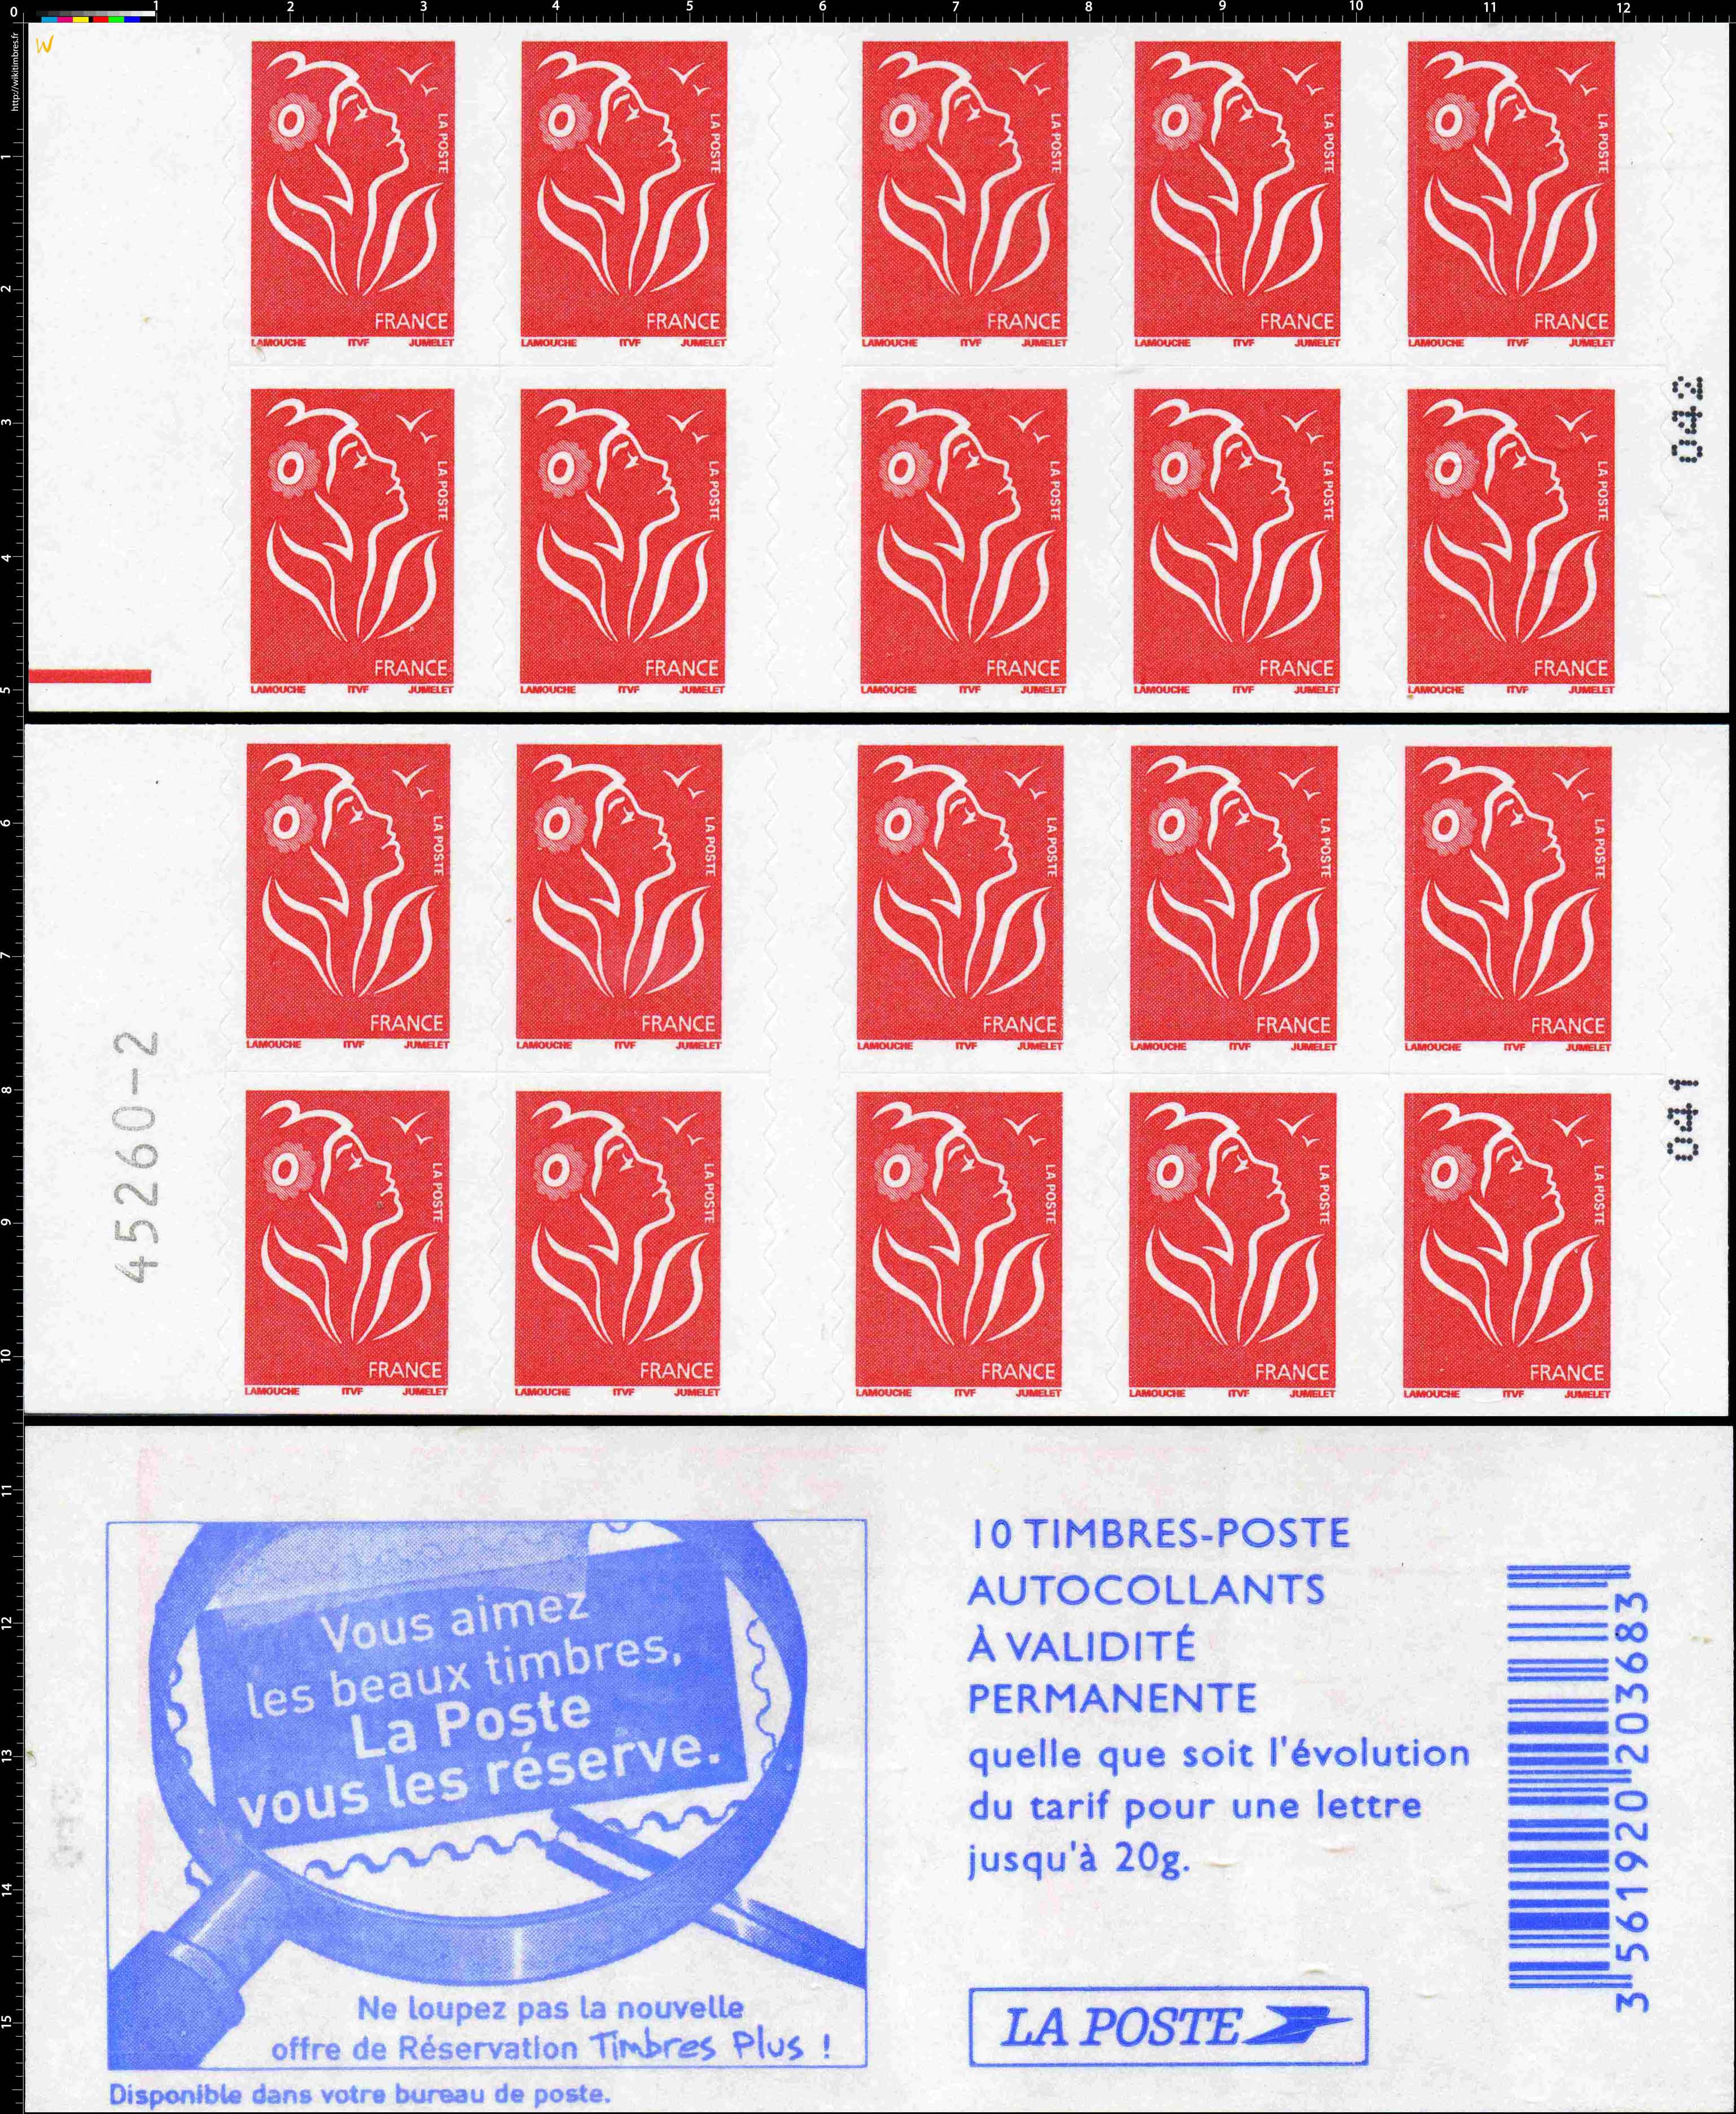 Vous aimez les beaux timbres, La Poste vous les réserve Ne loupez pas la nouvelle offre de Réservation Timbres plus !